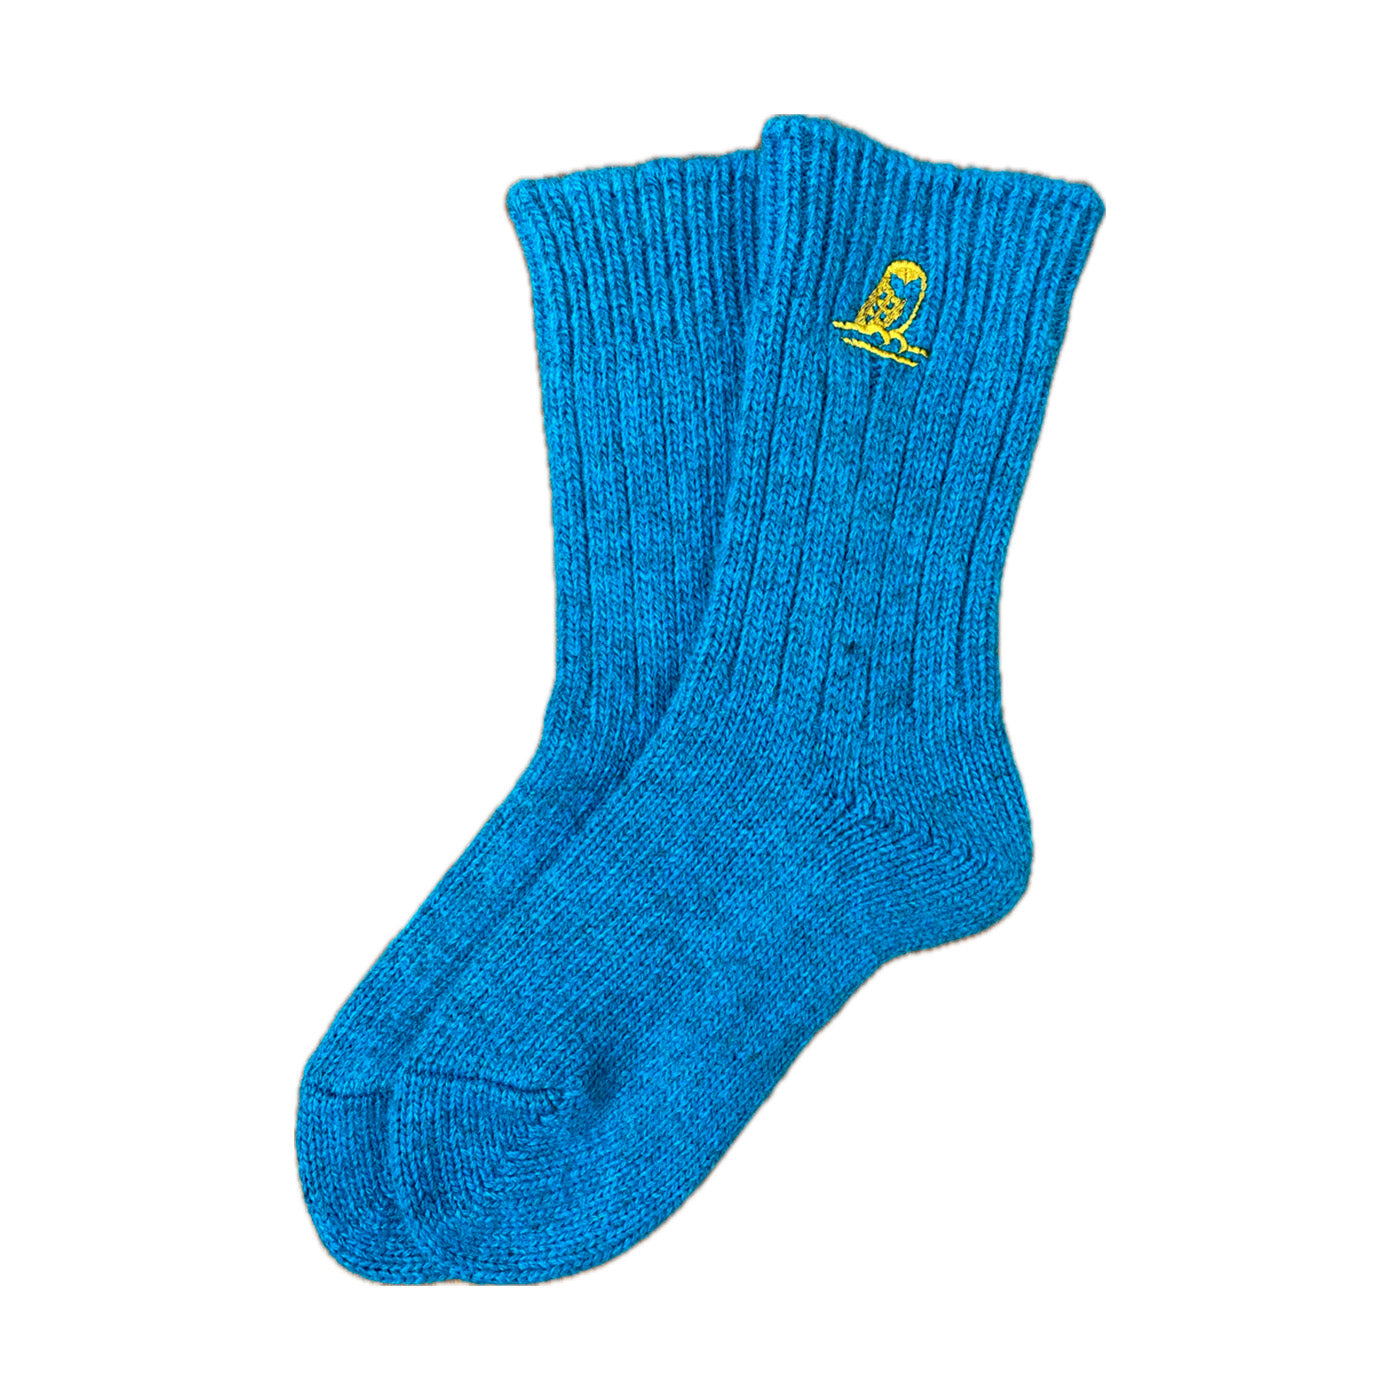 Helmi Wool Socks, Turquoise